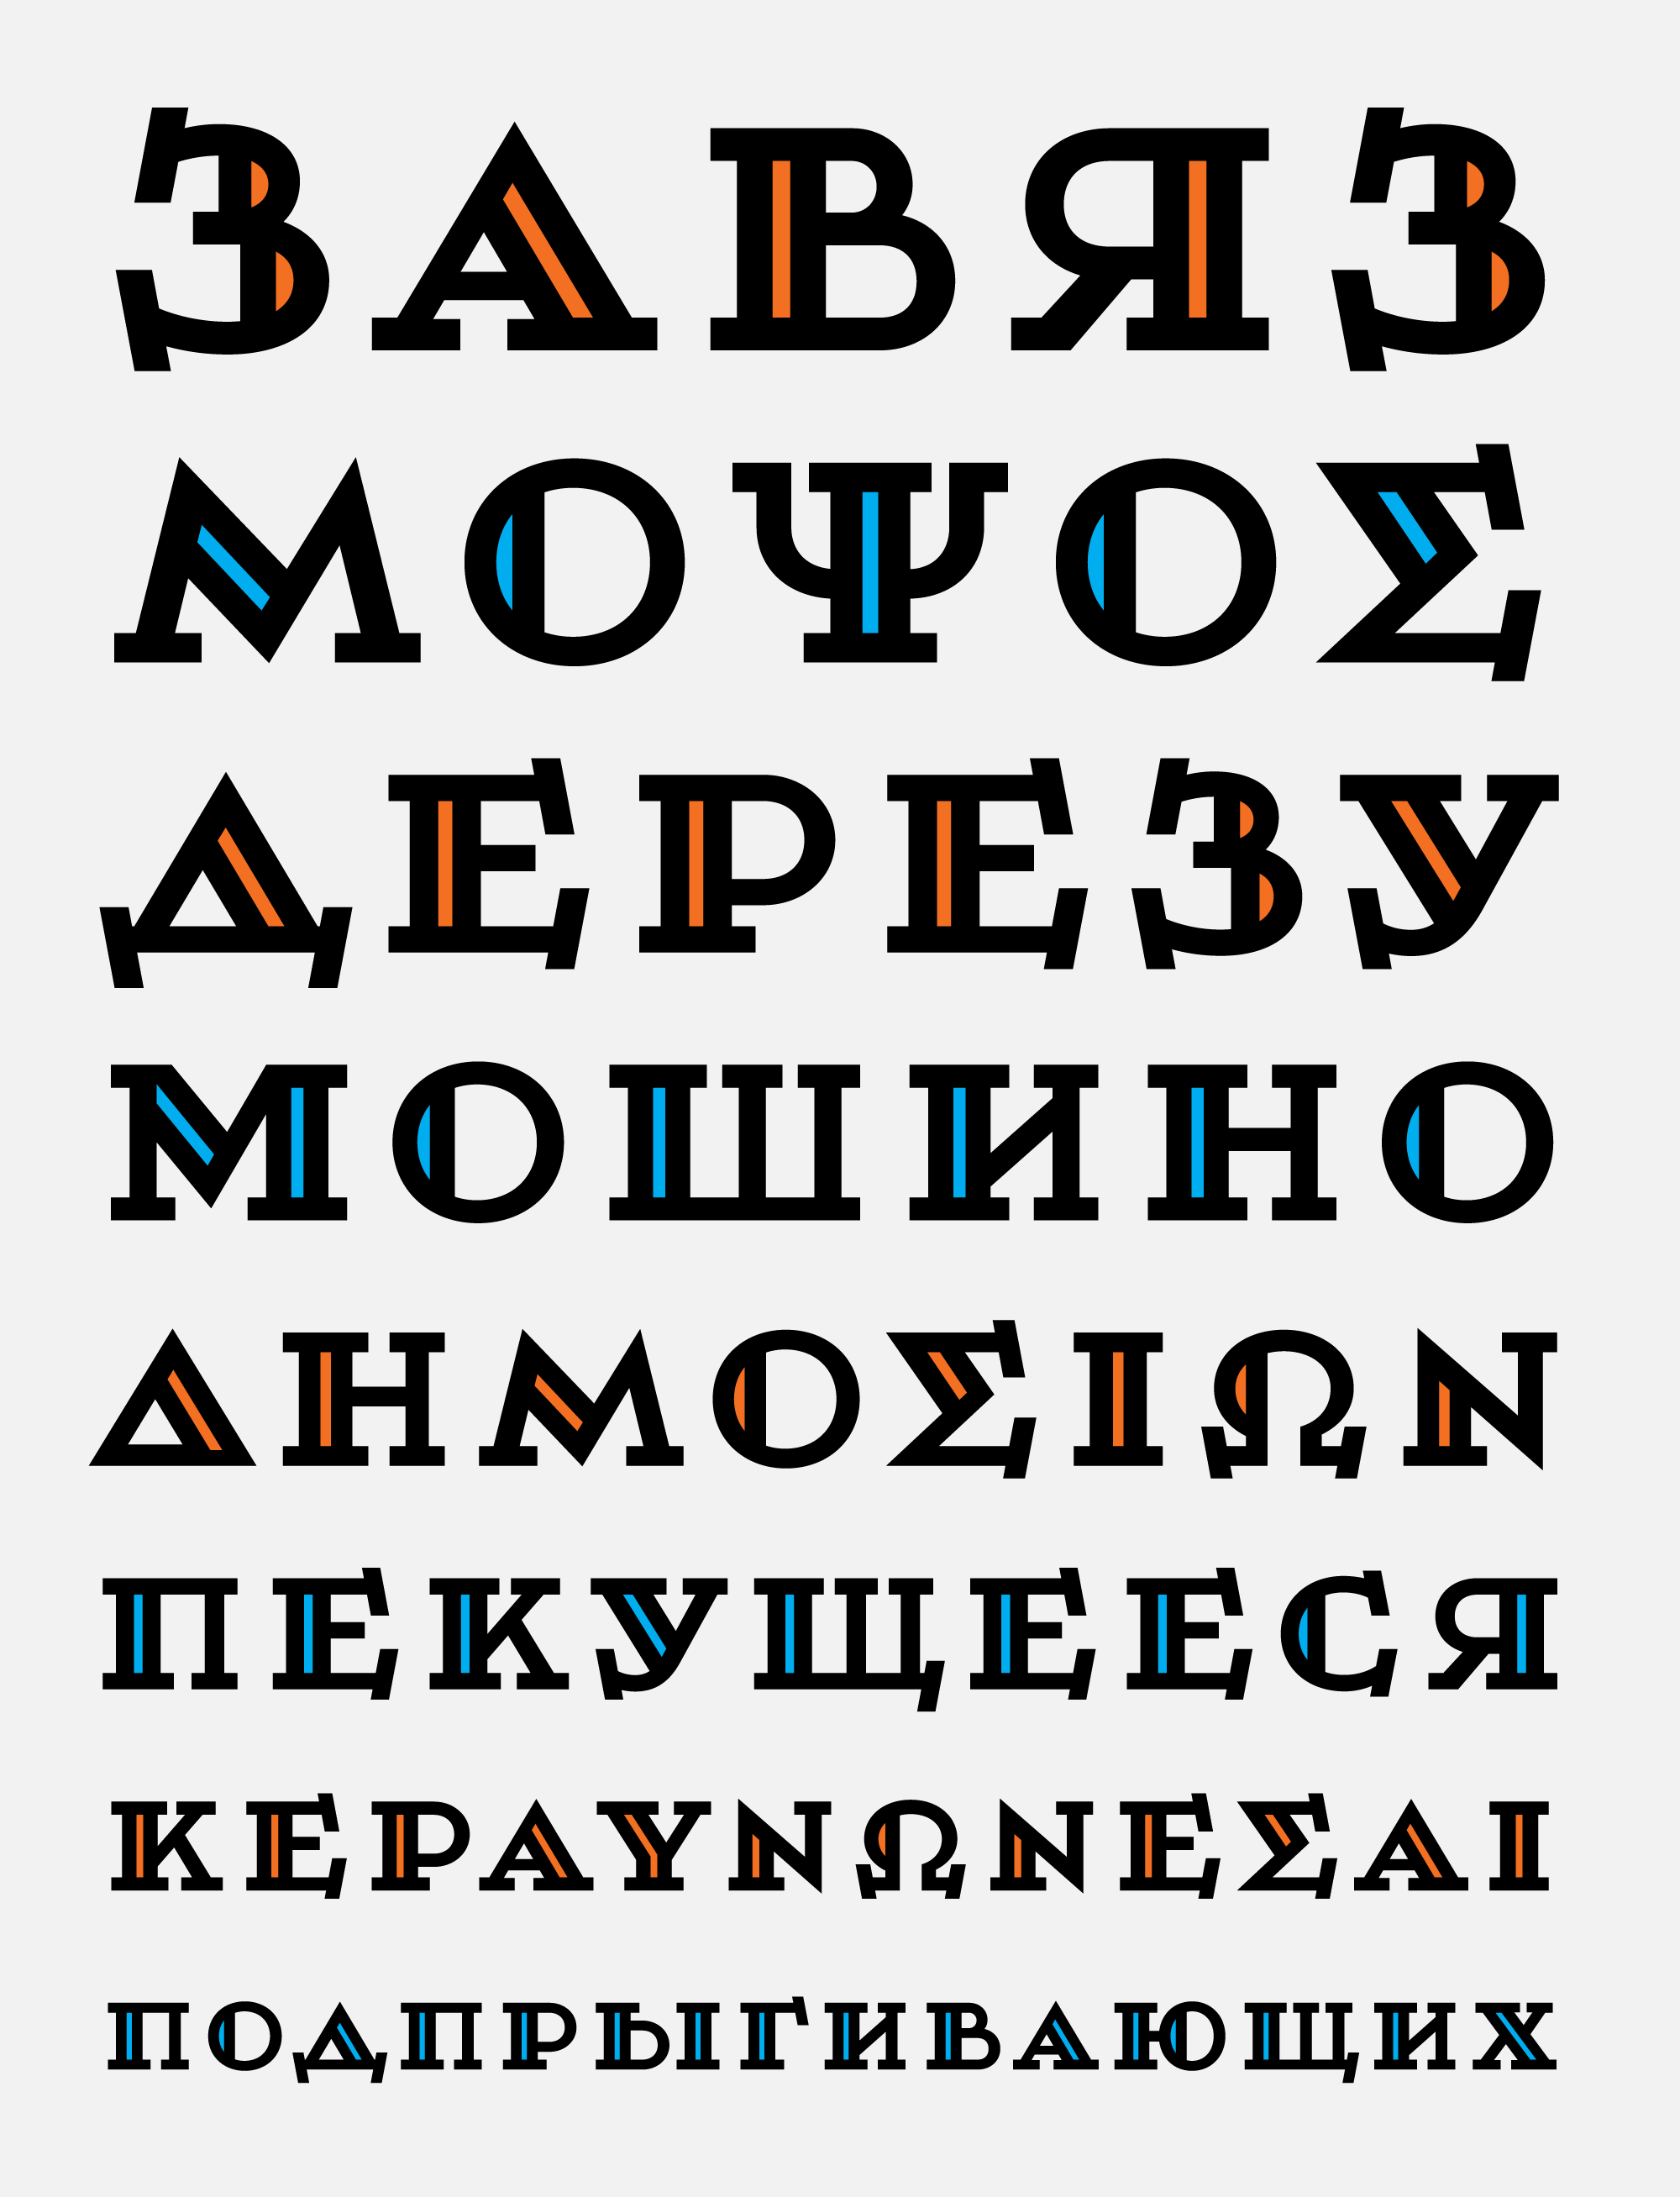 Greek and Cyrillic